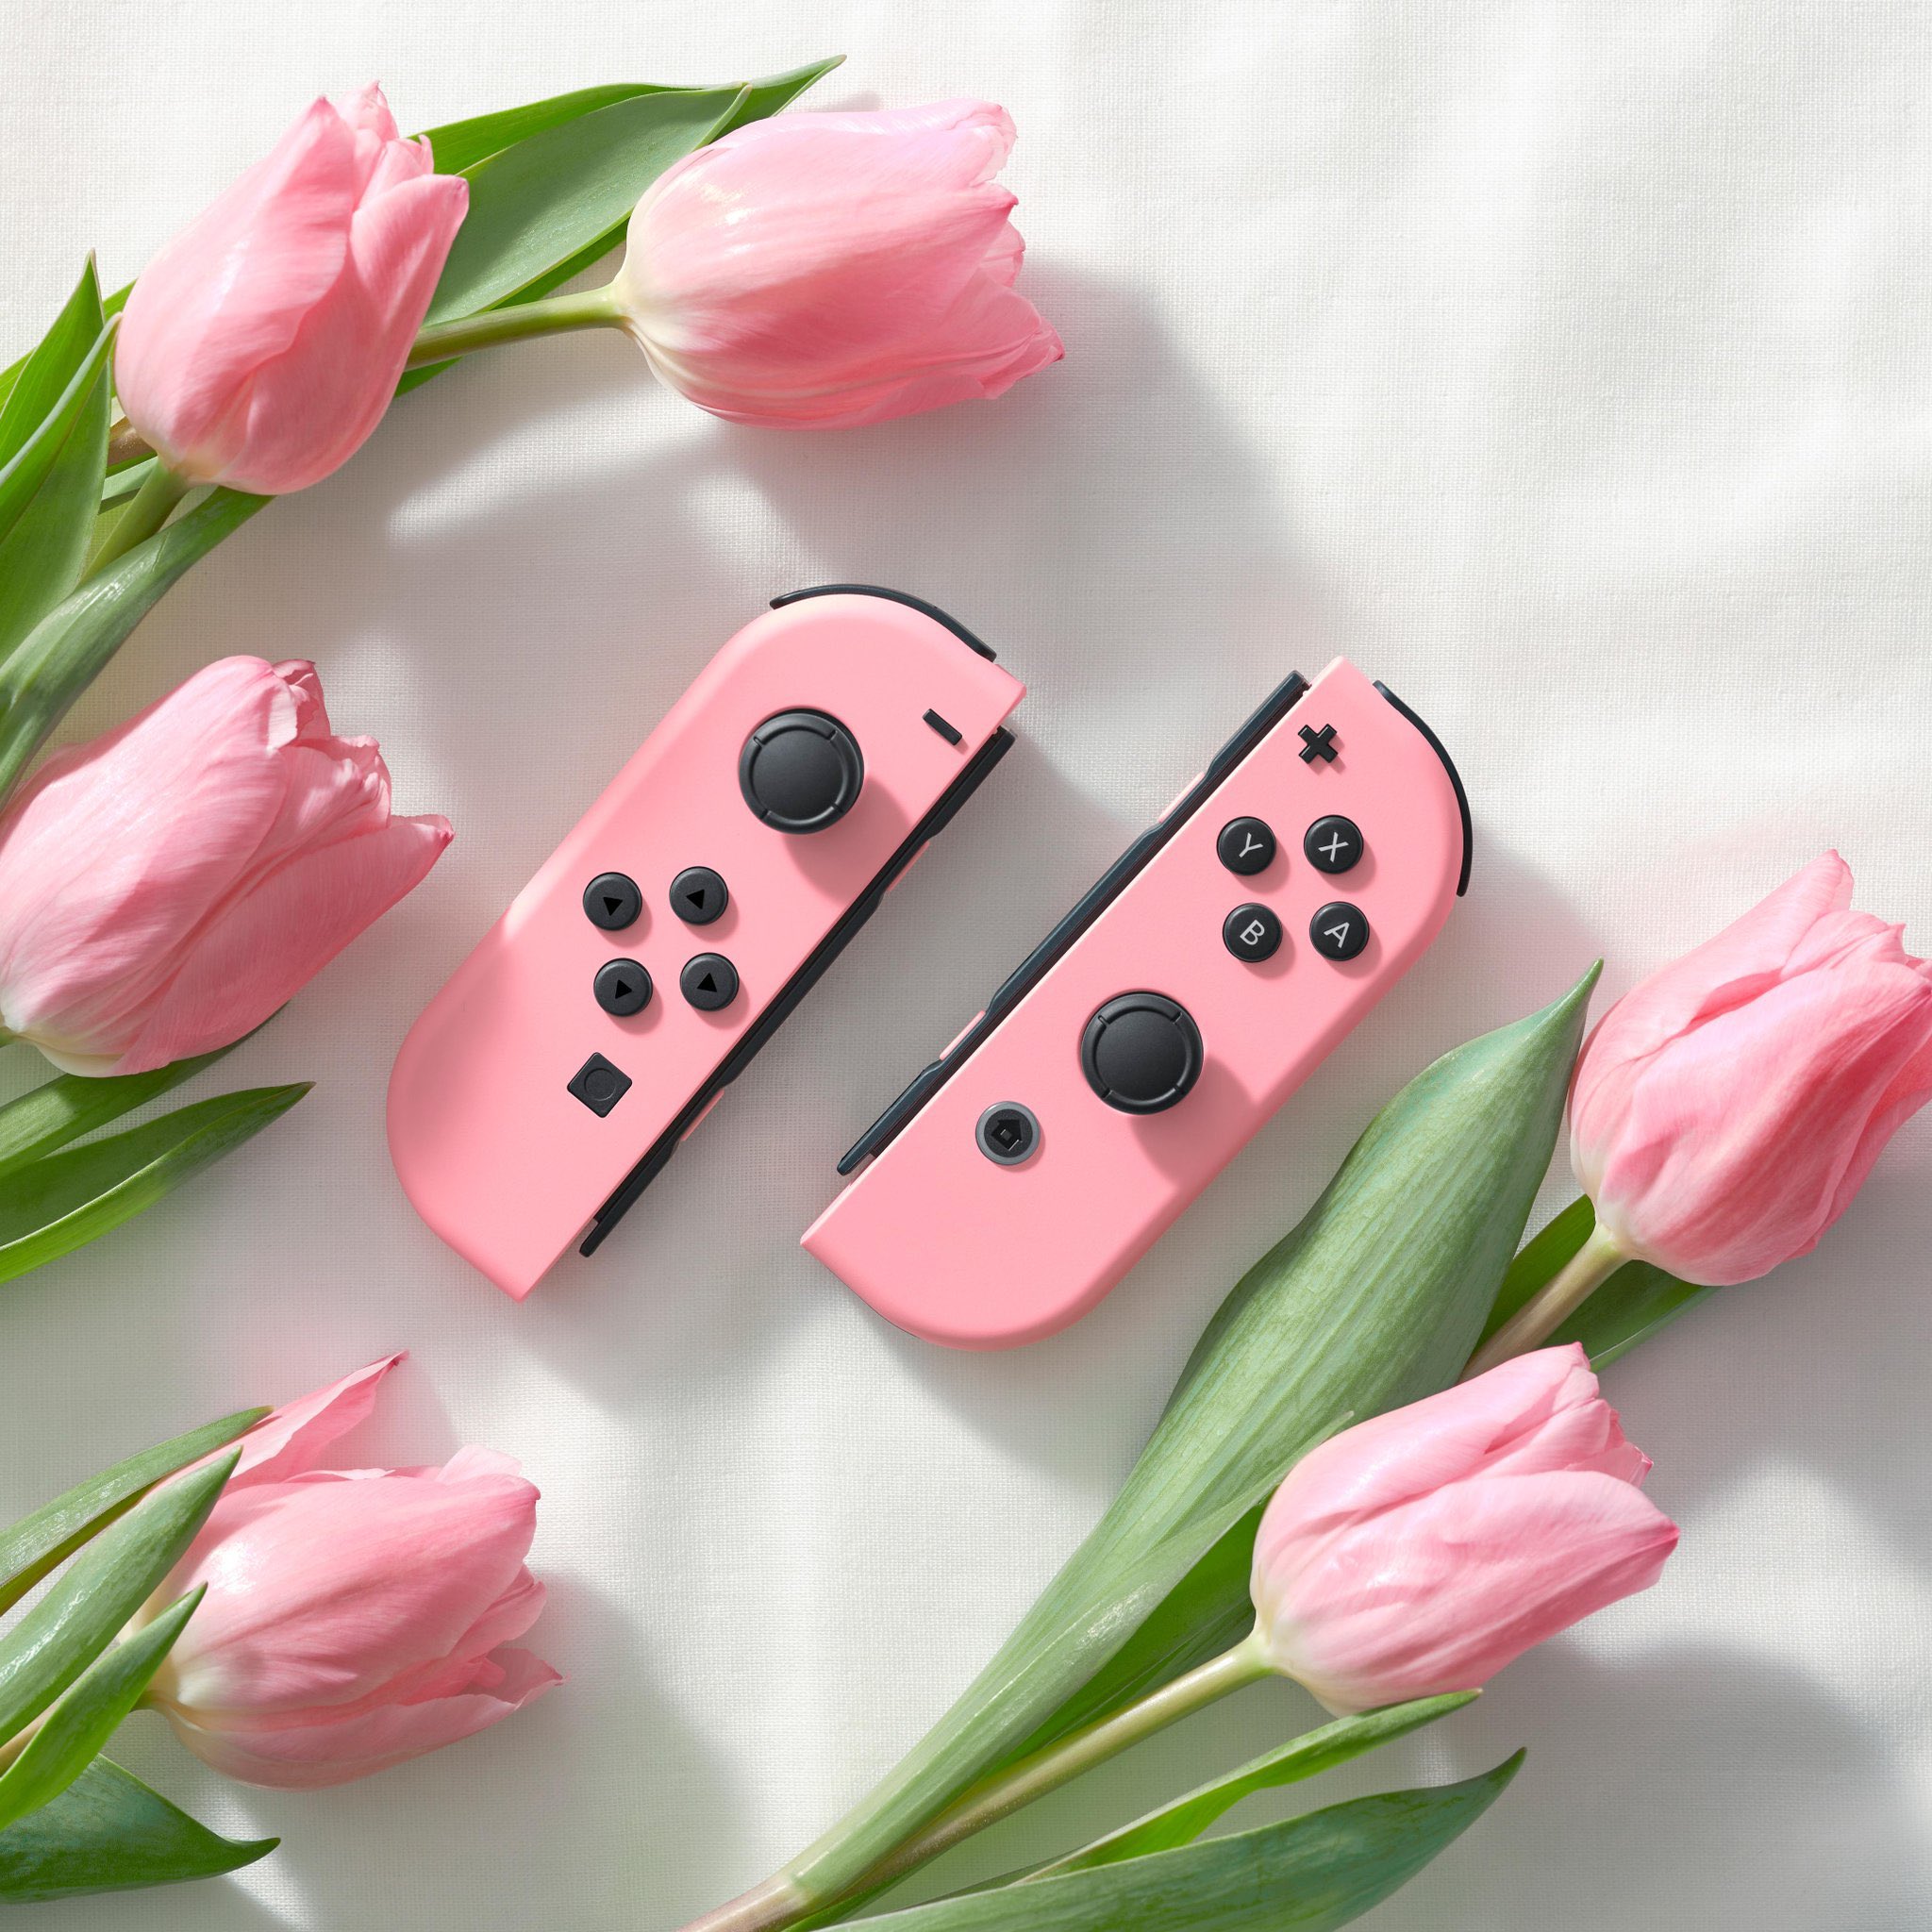 Princess Peach: Showtime!, Nintendo Switch